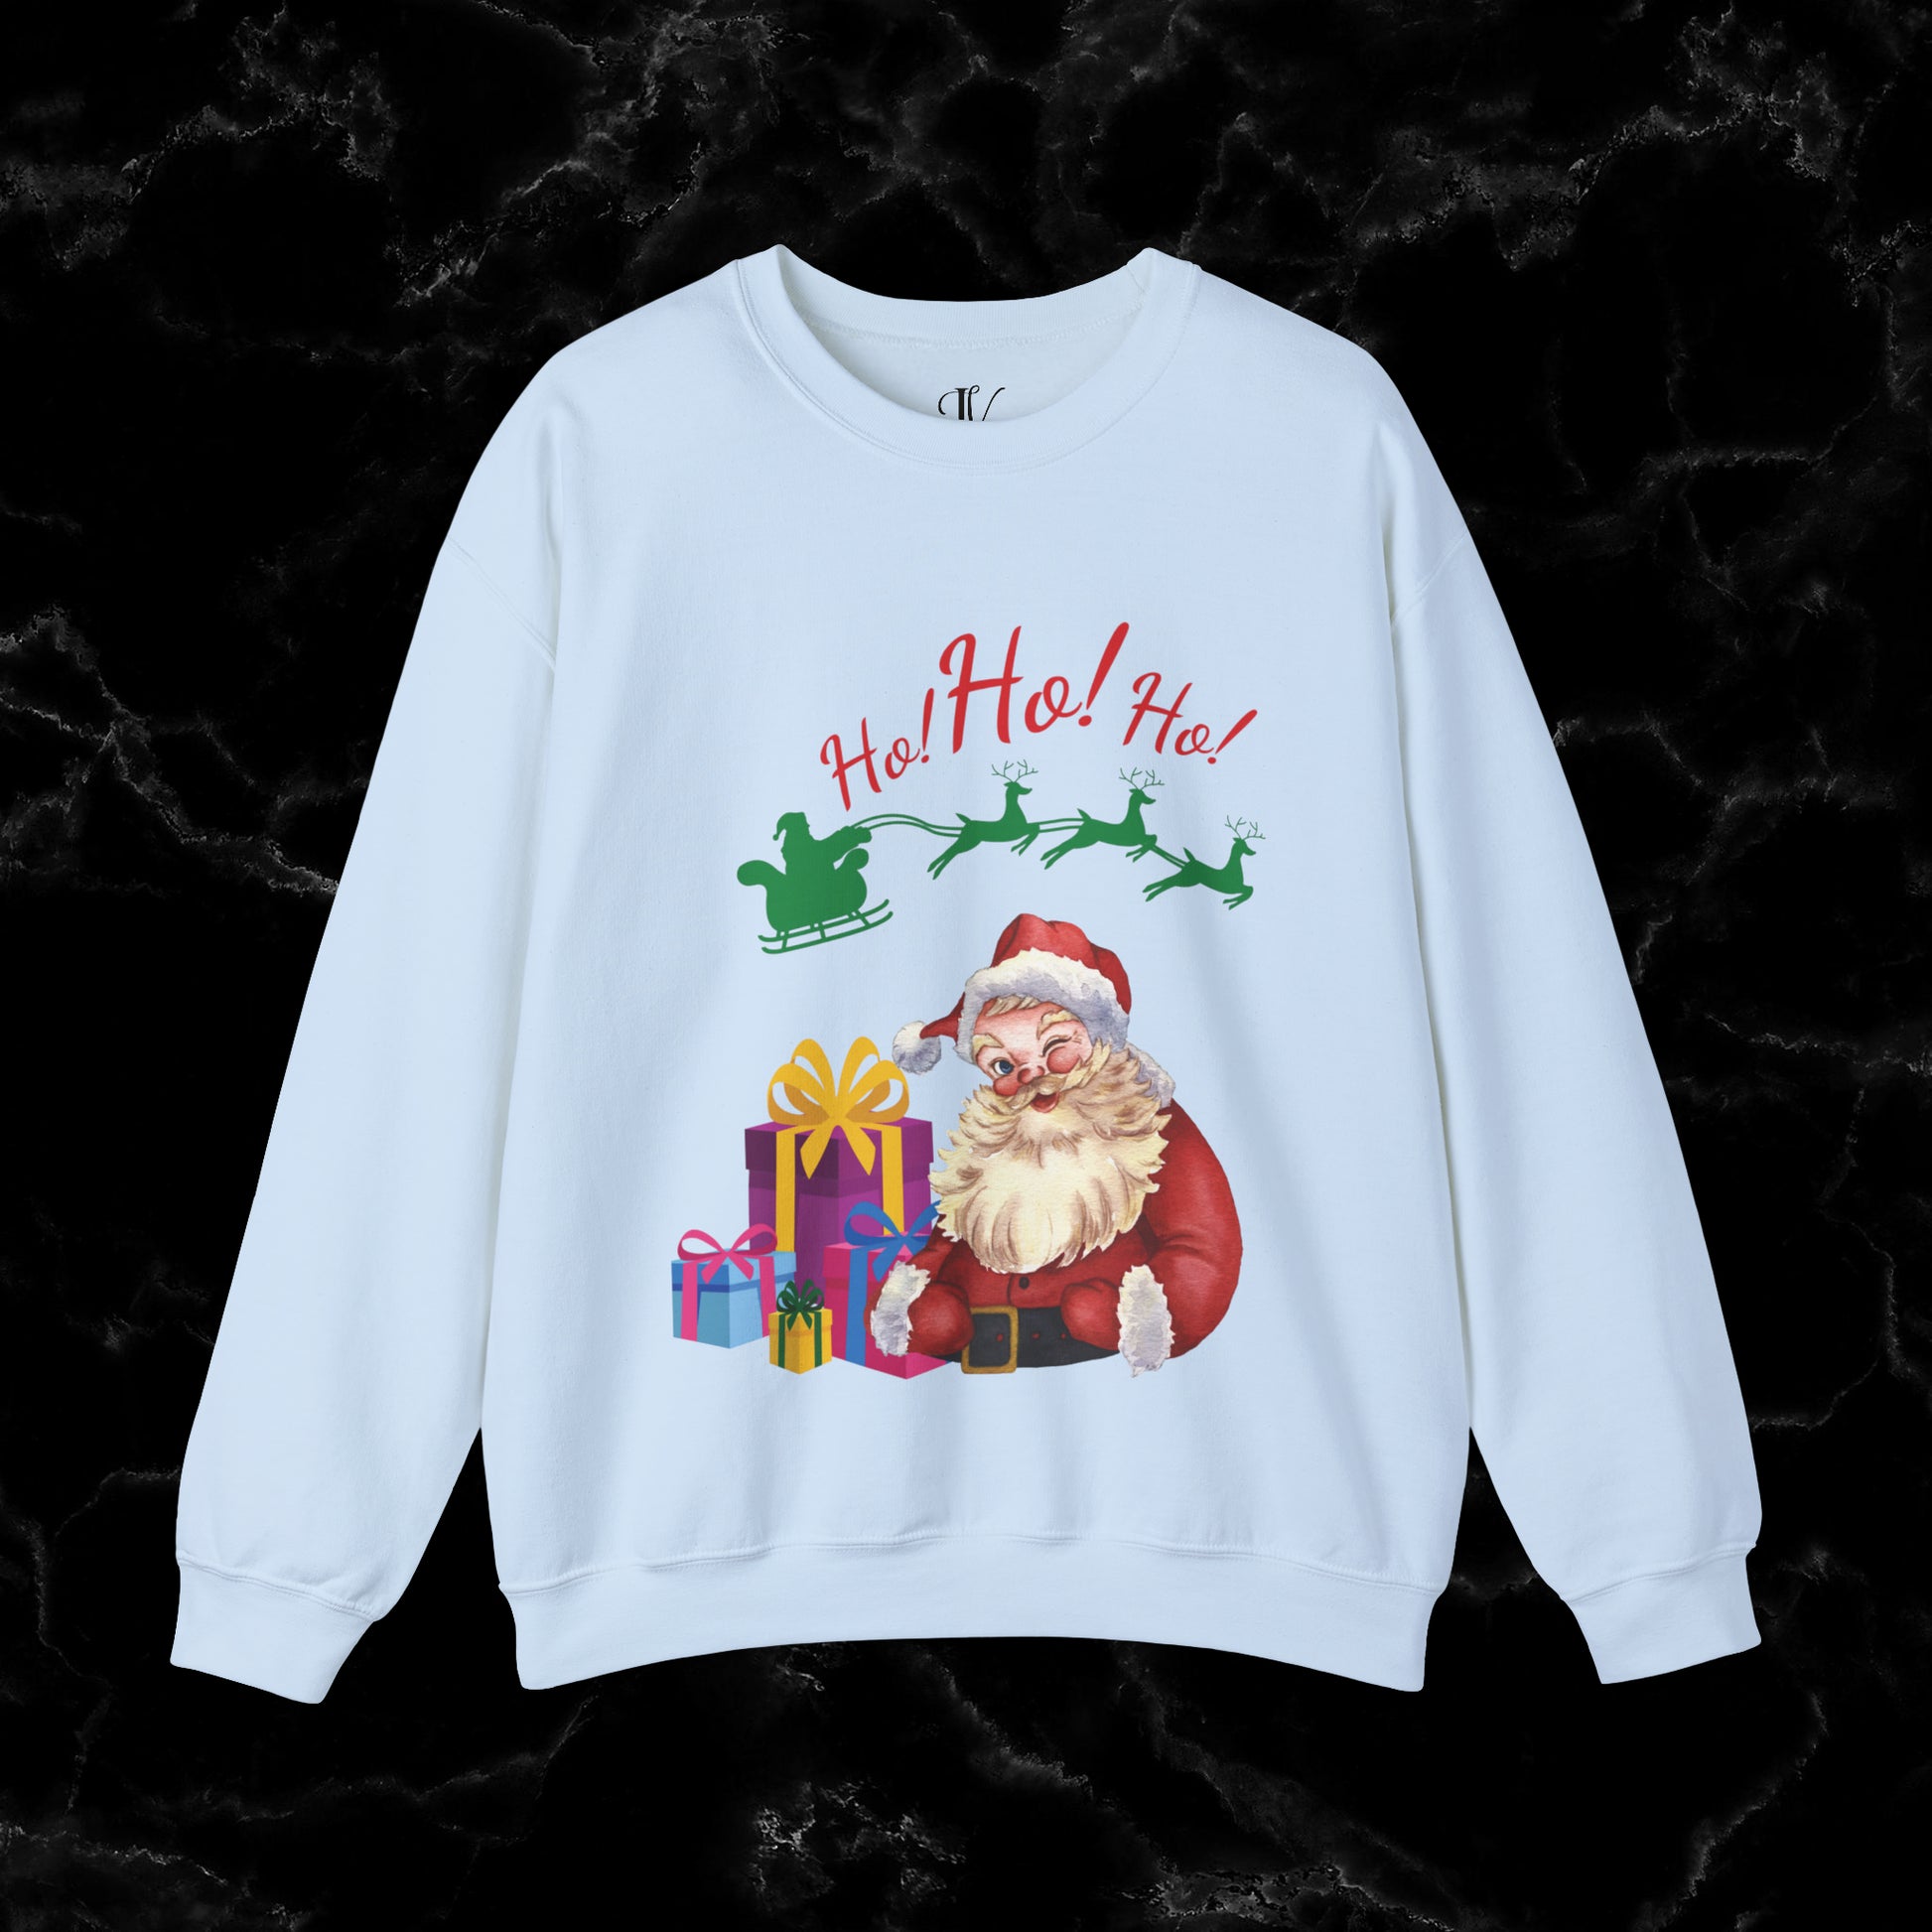 Retro Santa Sweatshirt - Vintage Christmas Fashion for Holiday Cheer Sweatshirt S Light Blue 